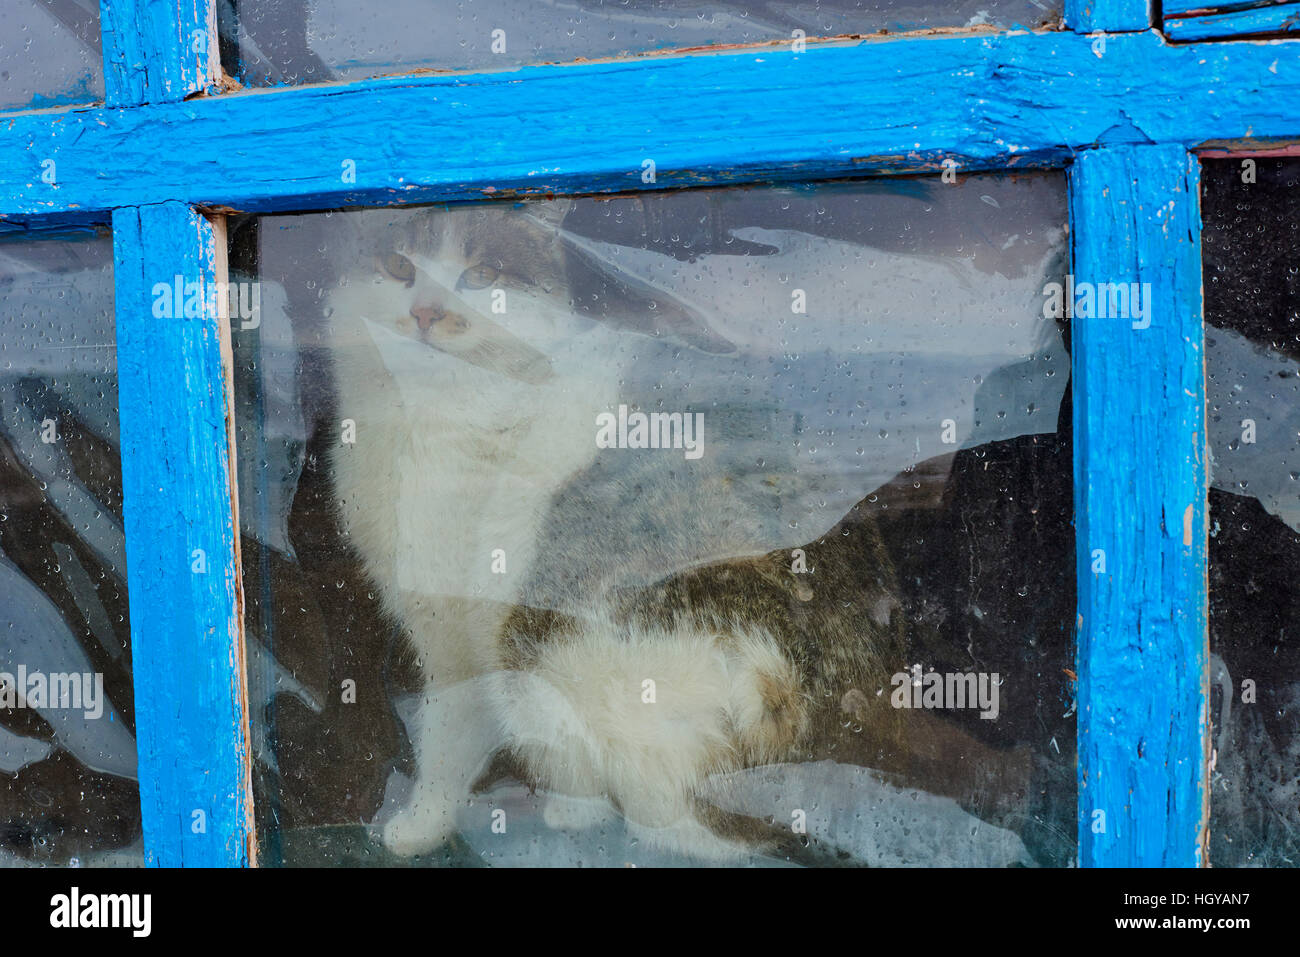 La Mongolie, Bayan-Olgii province, chat dans une famille Kazakh Banque D'Images